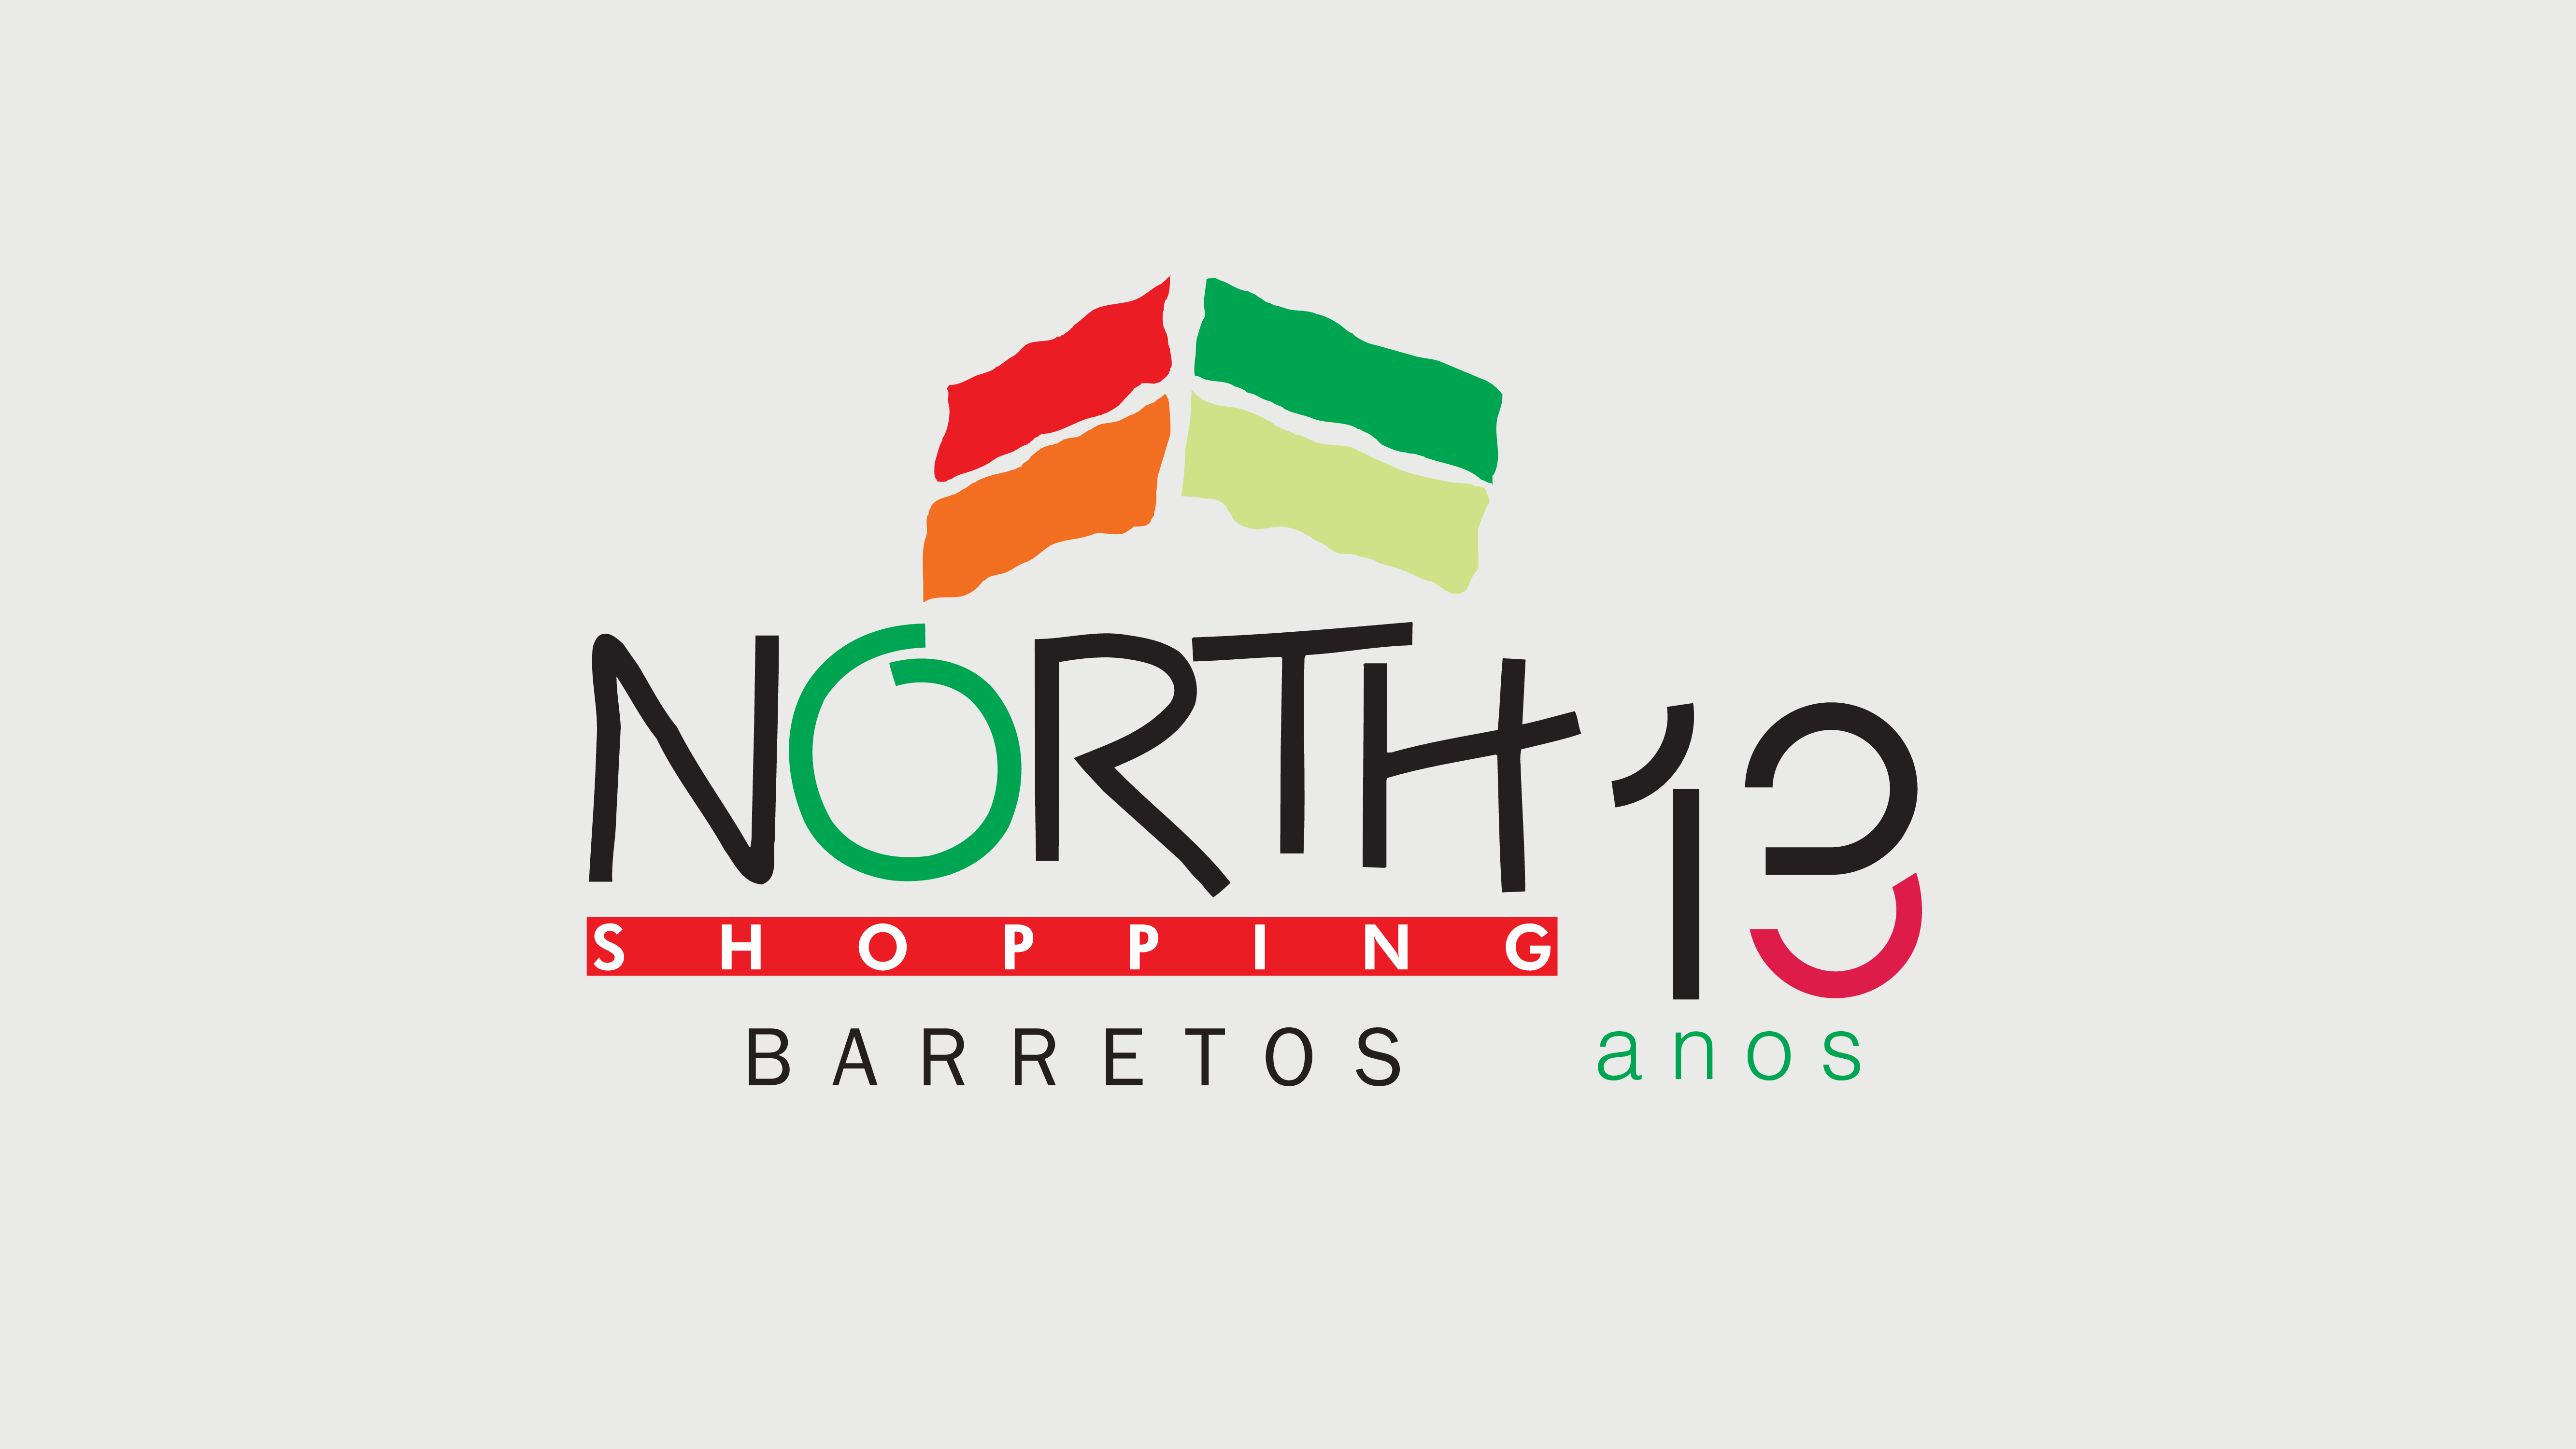 North Shopping Barretos inicia comemoração dos 13 anos com o lema "Seu sorriso, nosso presente"